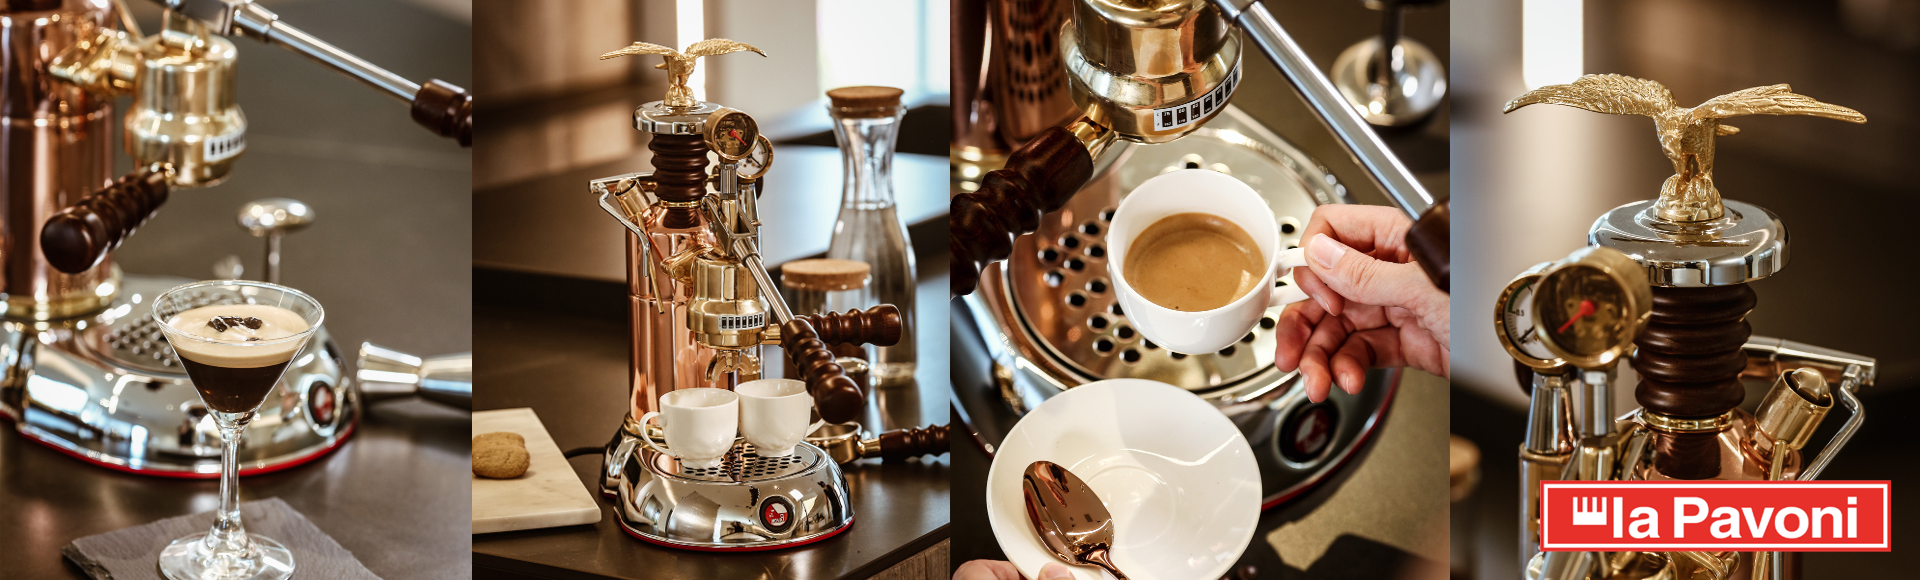 La Pavoni machines à café espresso